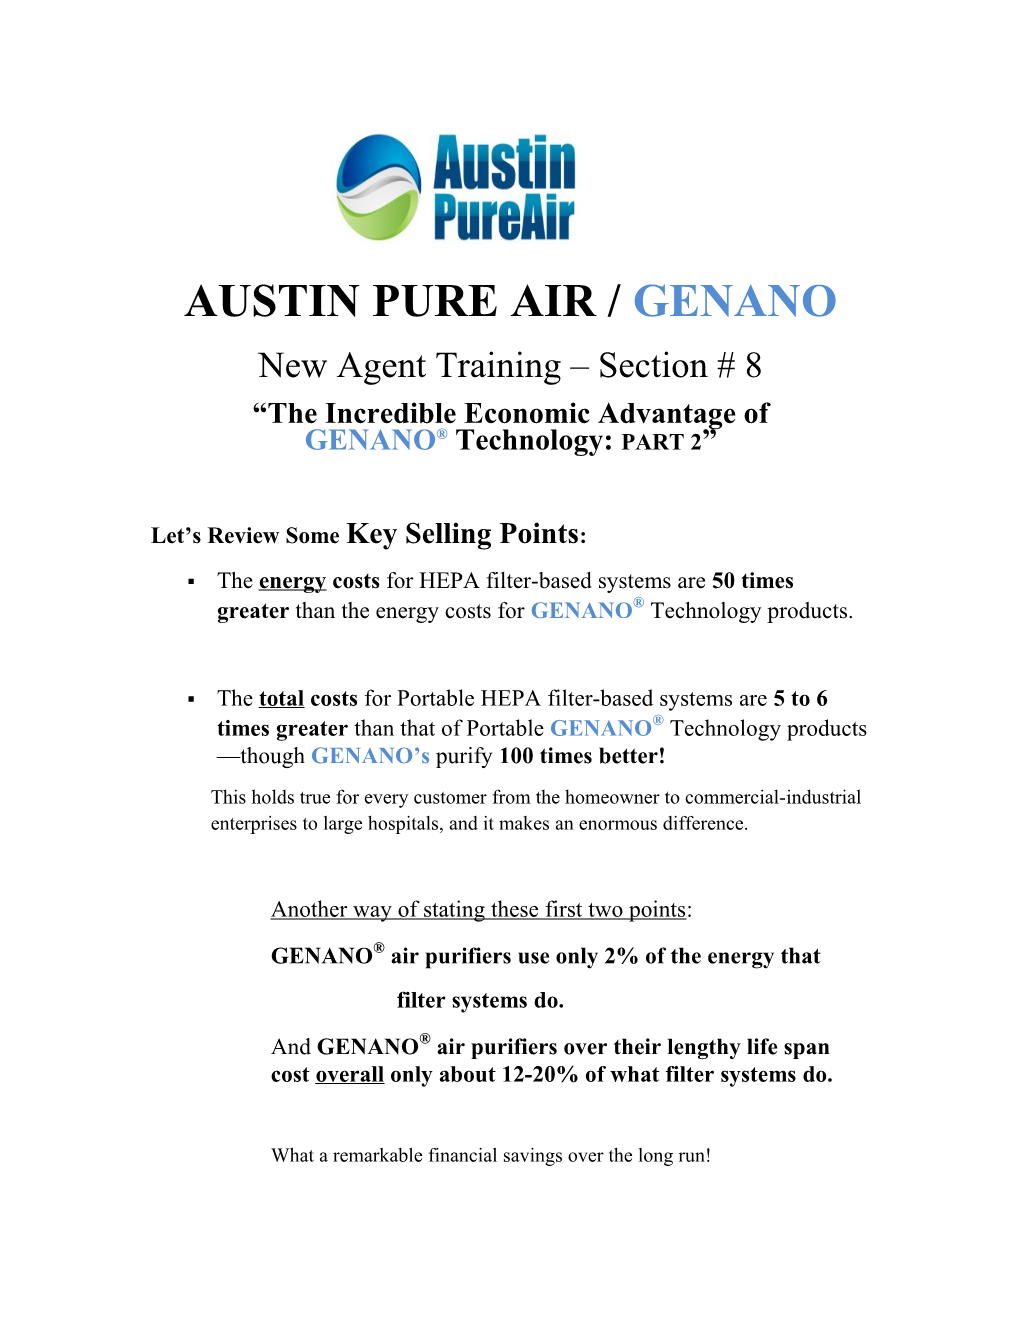 Austin Pure Air /Genano